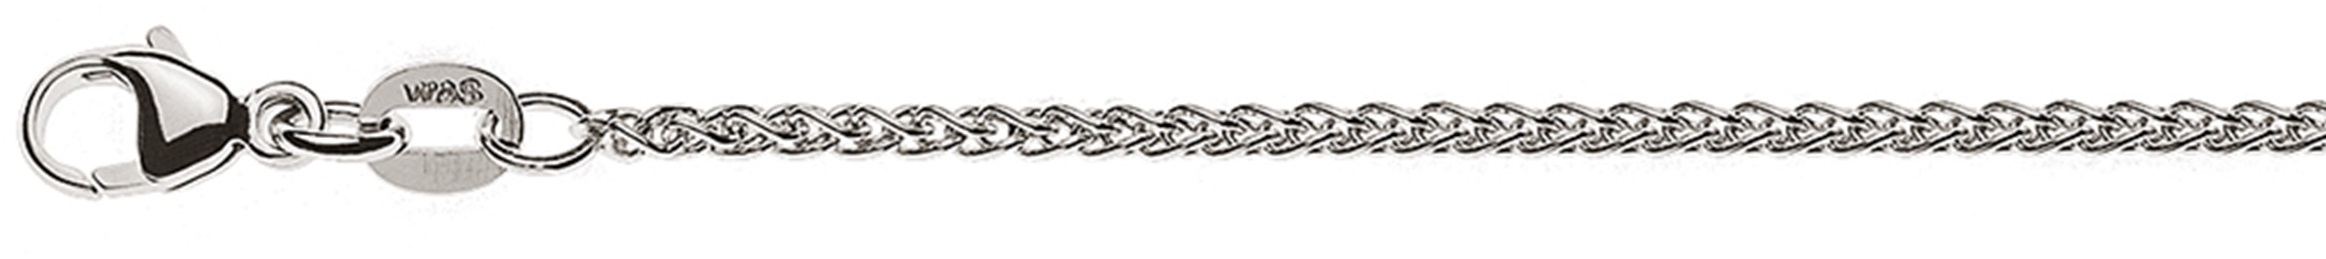 AURONOS Style Halskette Weissgold 9K Zopfkette 40cm 1.65mm